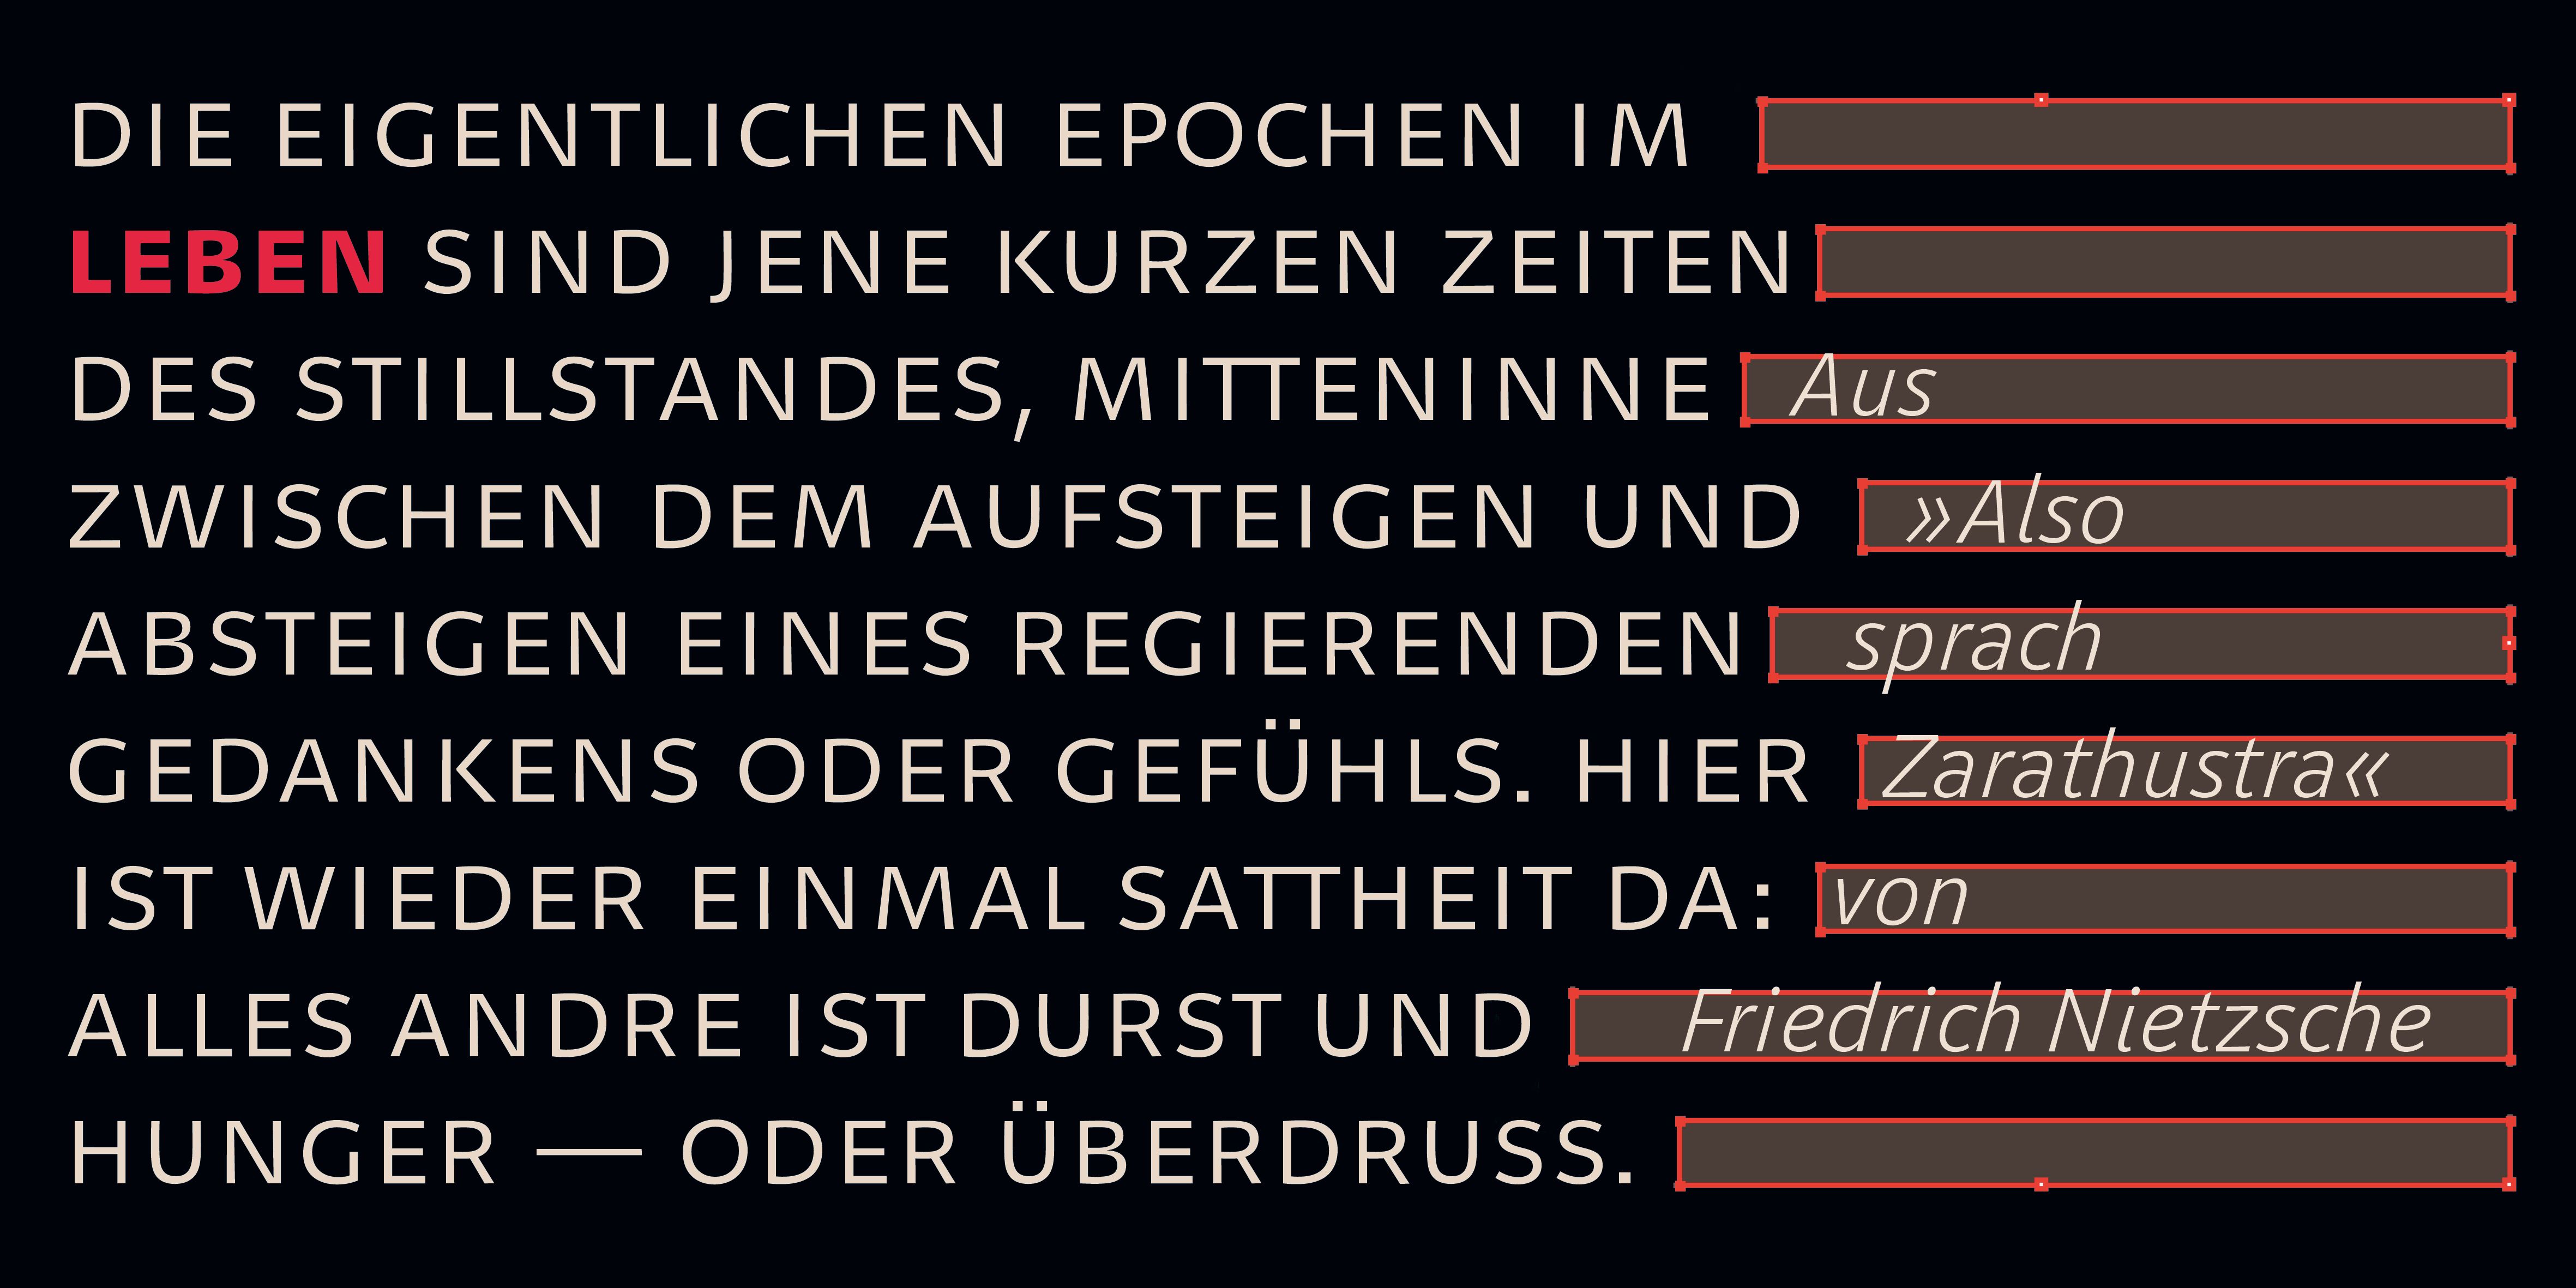 Poster: Typografische Umsetzung eines Nietzsche-Zitats in der Geóso